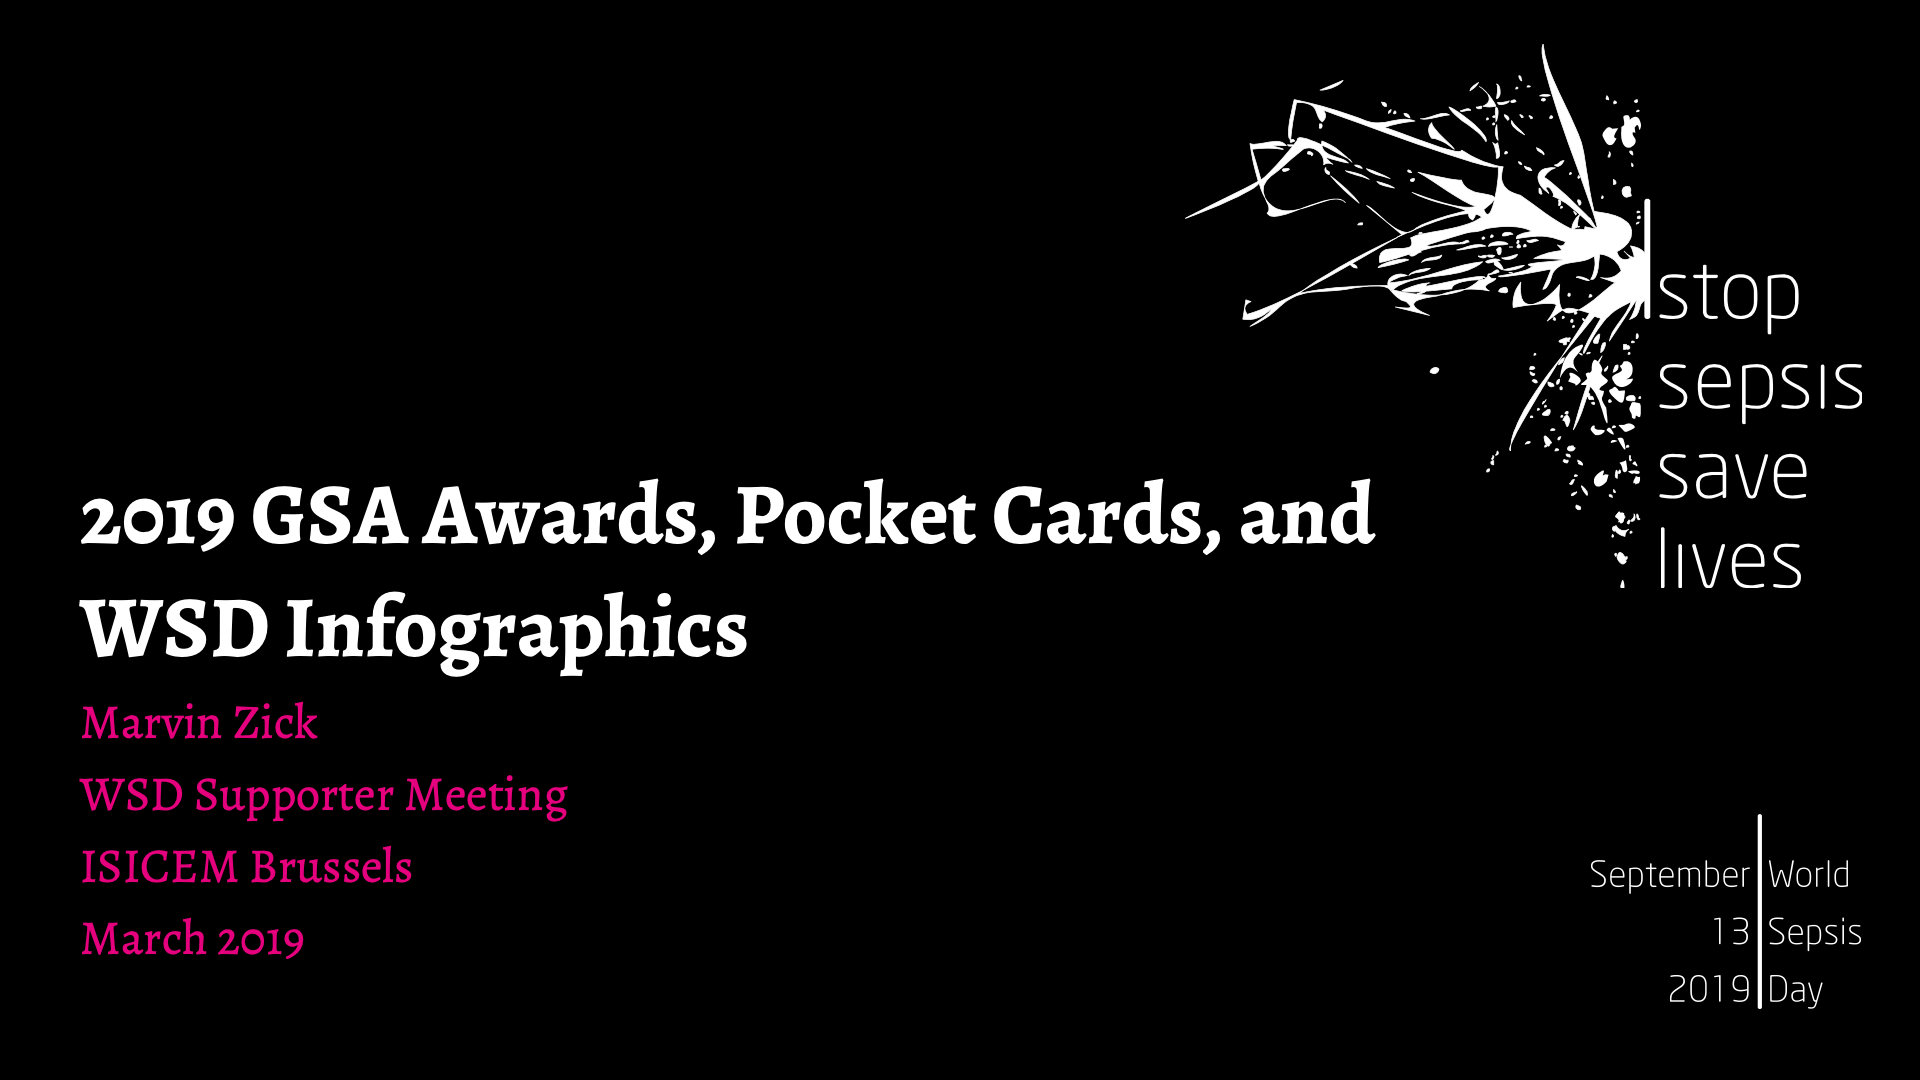 2019 GSA Awards, Pocket Cards, Infographics 1.png